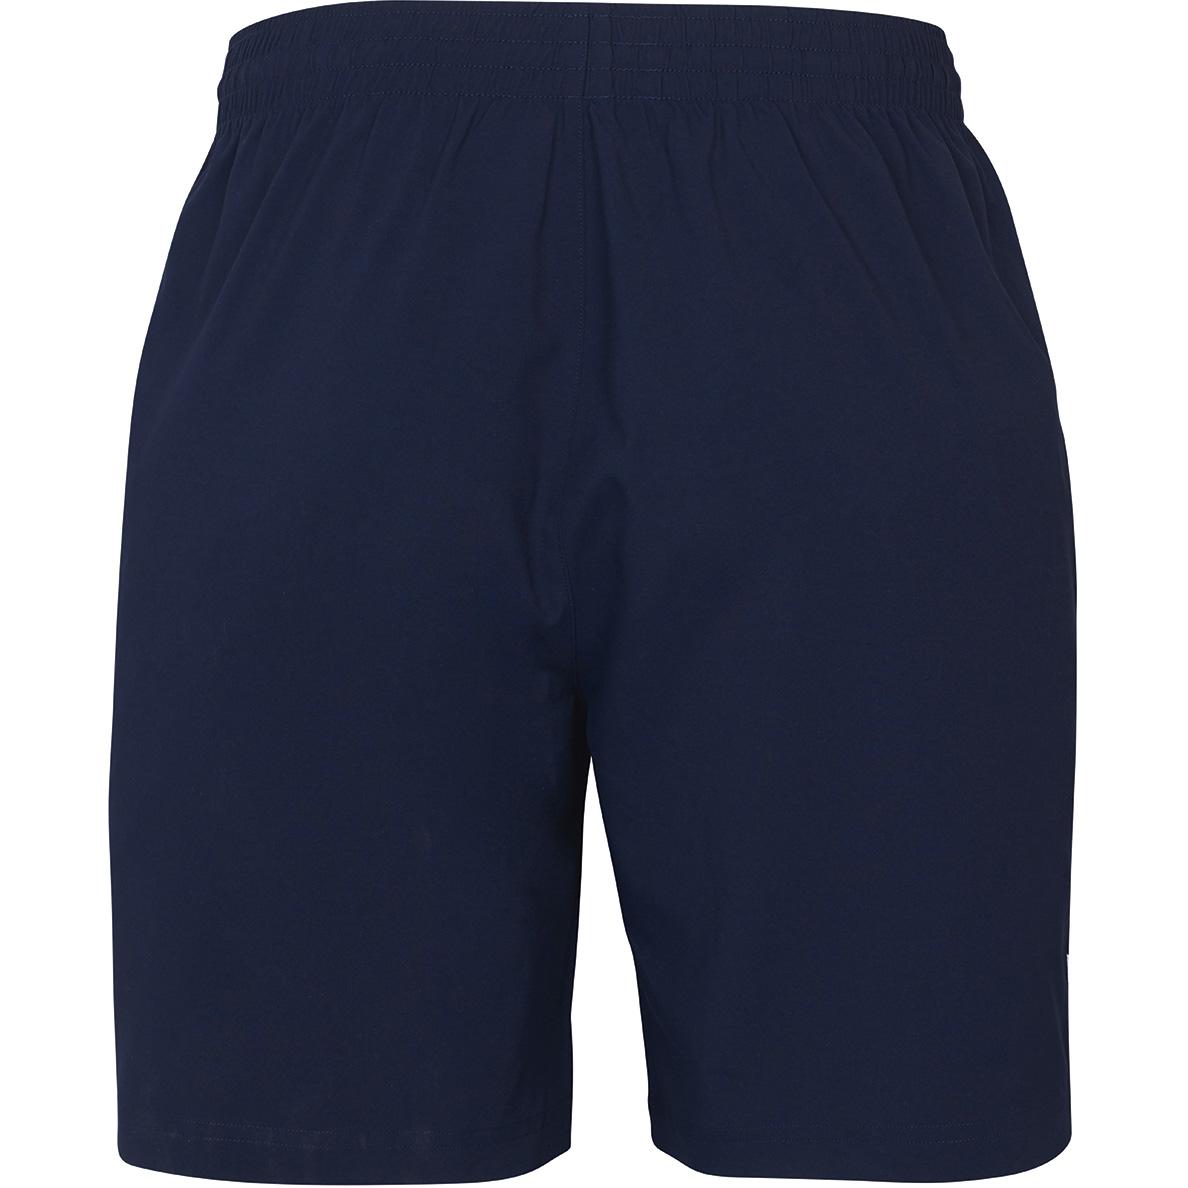 Fila Mens Heritage Shorts - Navy - Tennisnuts.com